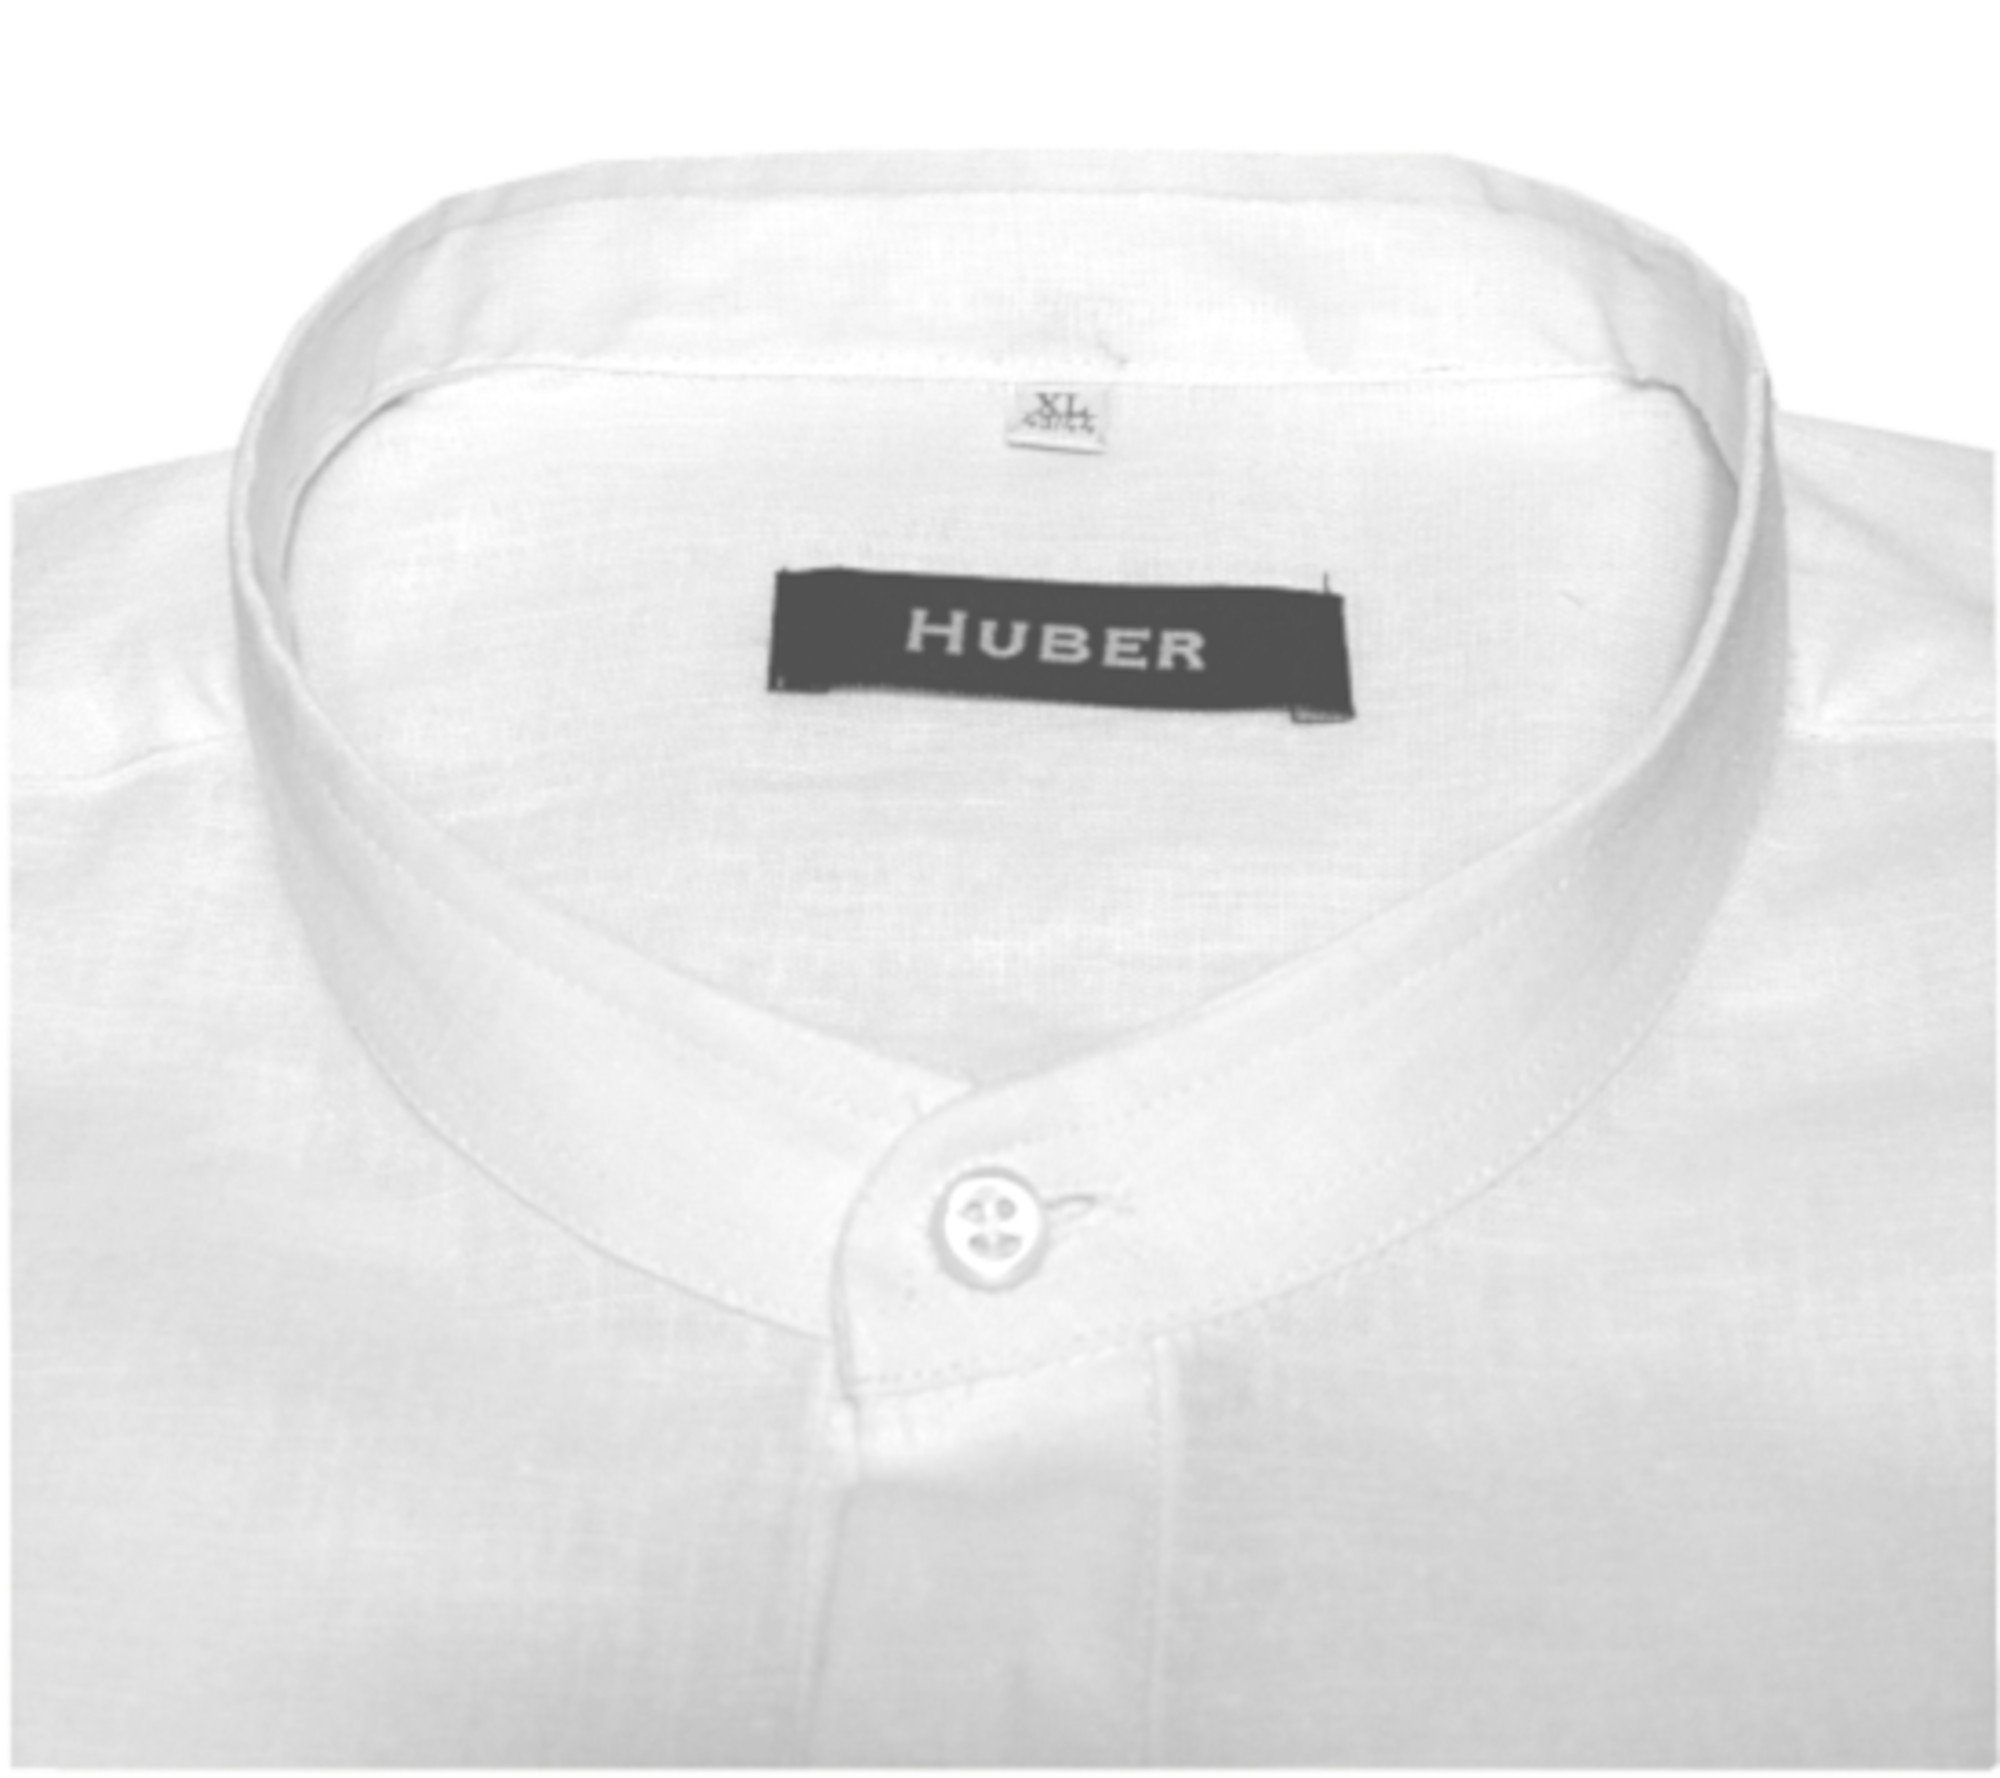 mit Hemden weiß Stehkragen, Huber HU-0501 100% Leinen Leinenhemd Schlupfhemd in EU Made Regular